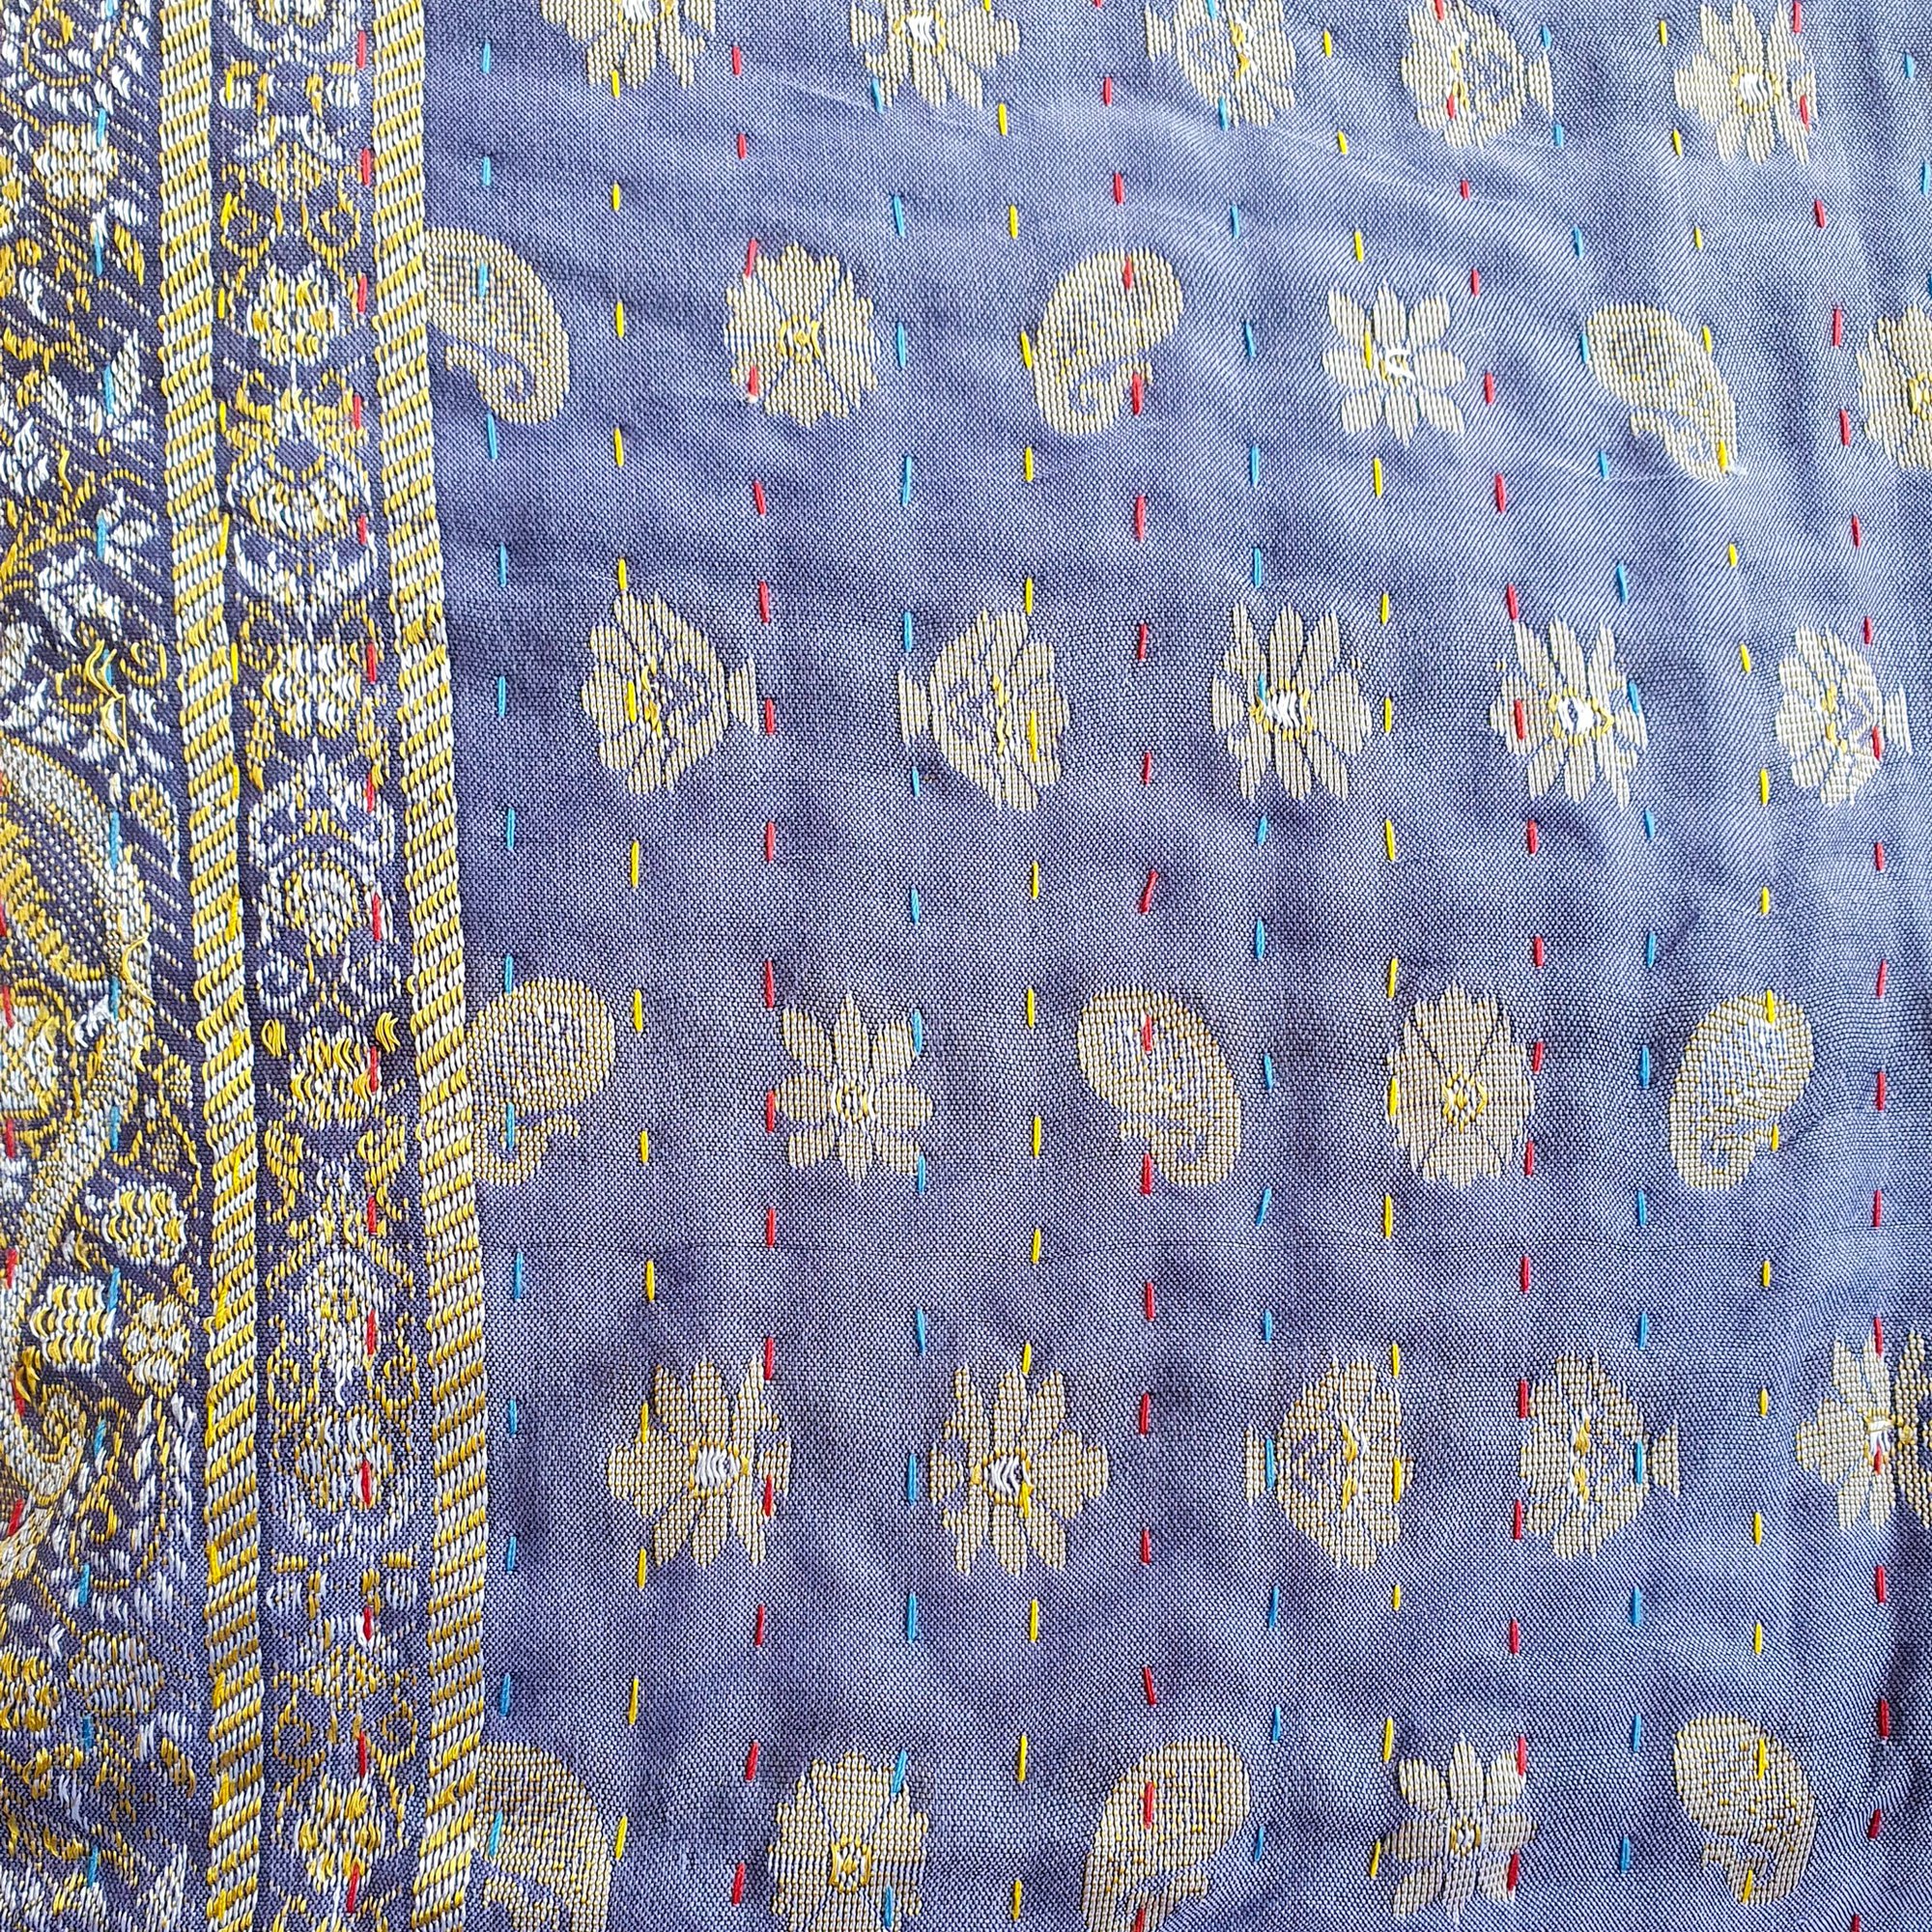 Silk Sari Cushion Cover